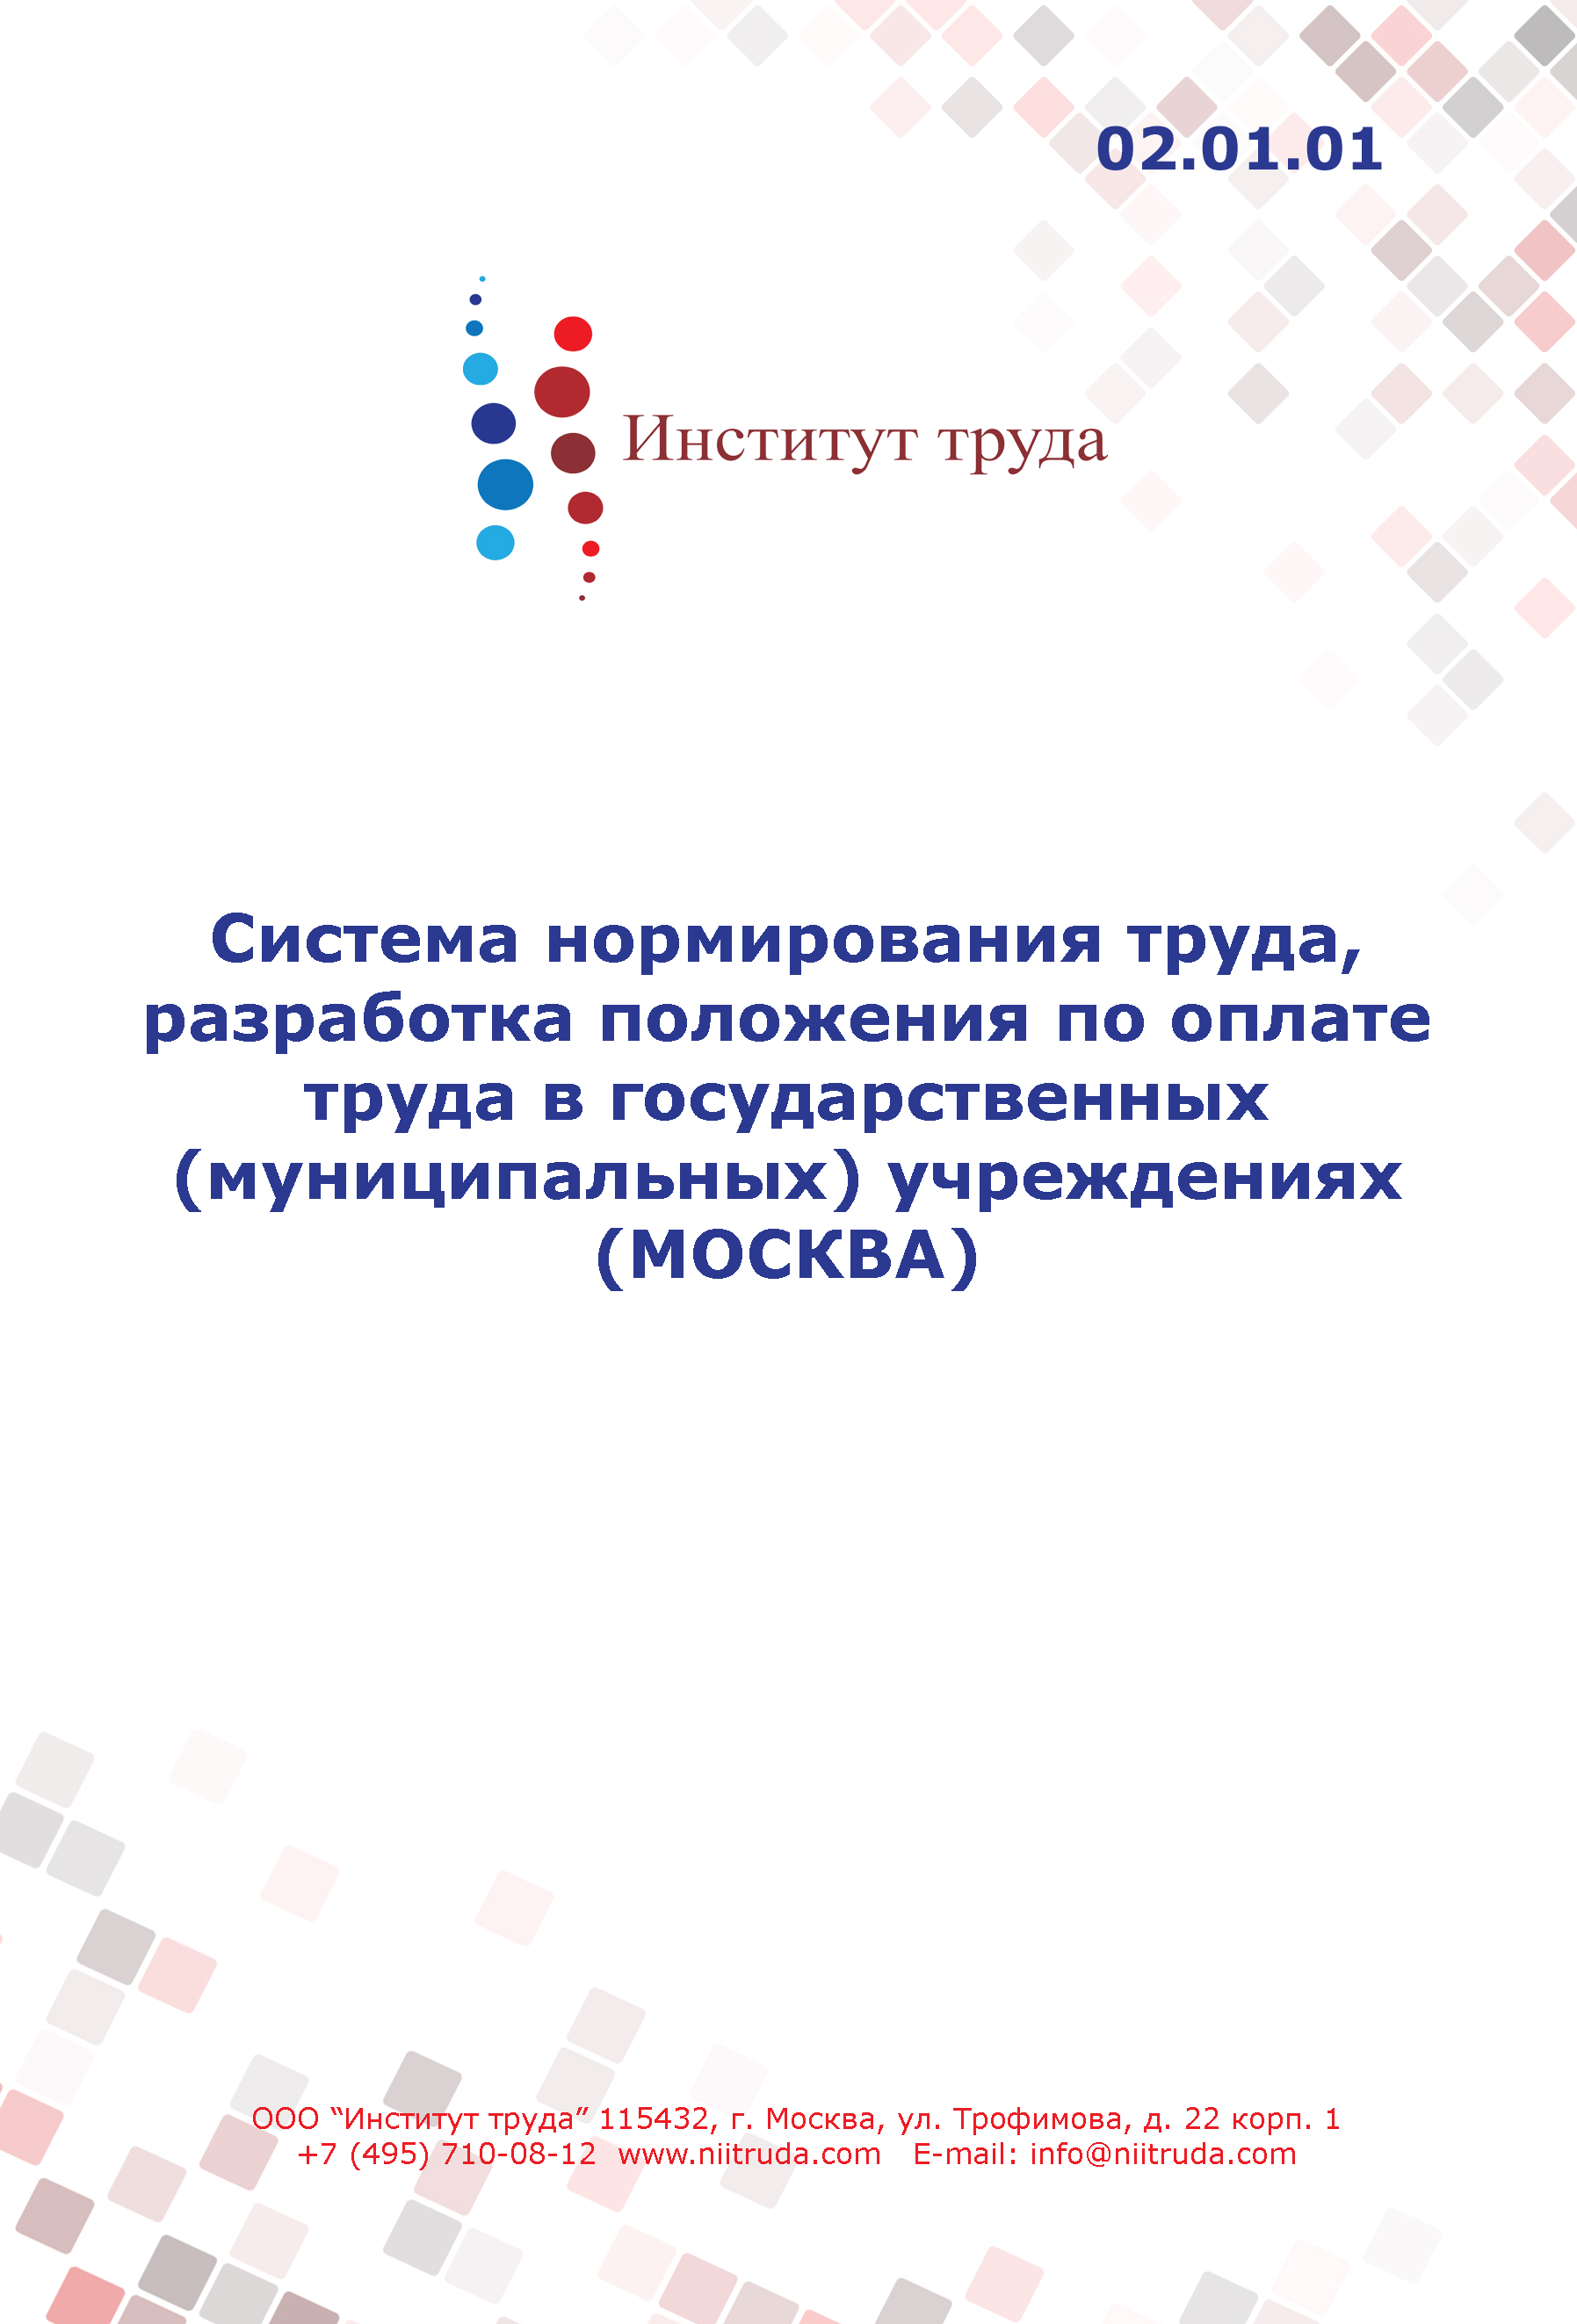 Система нормирования труда, разработка положения по оплате труда в государственных (муниципальных) учреждениях (МОСКВА)